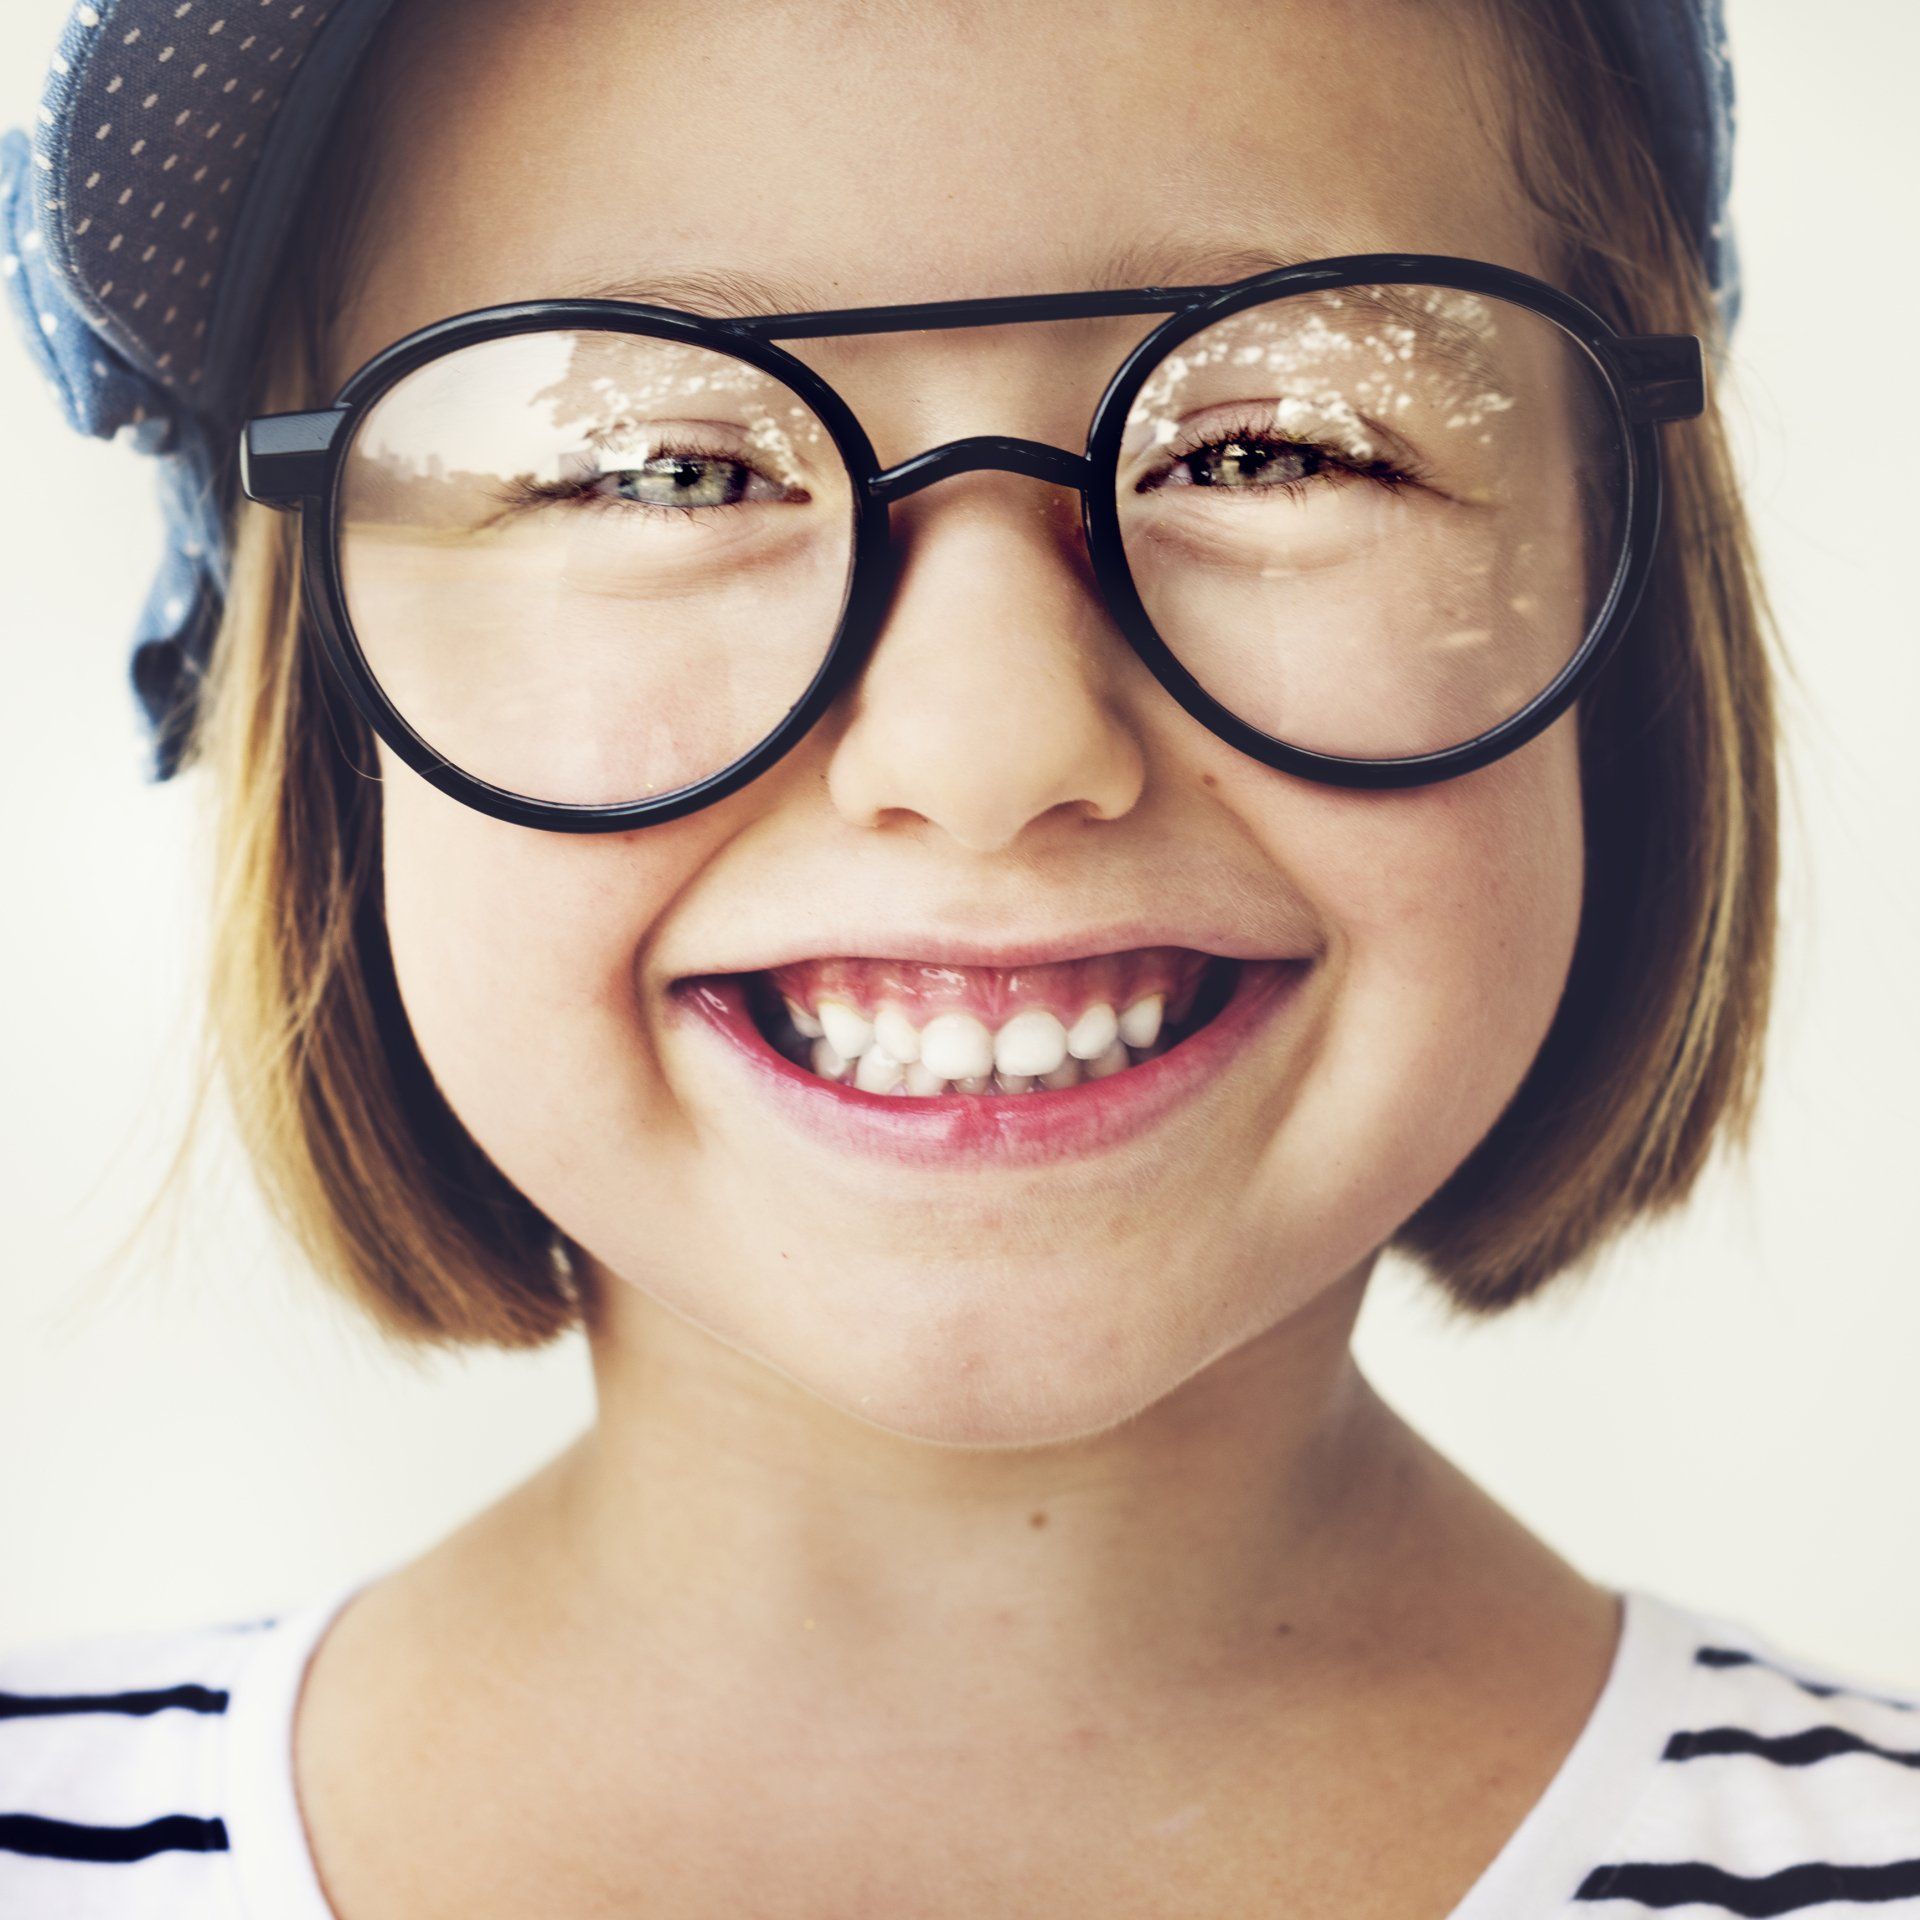 Opticien gembloux - magasin de lunette pour enfant 